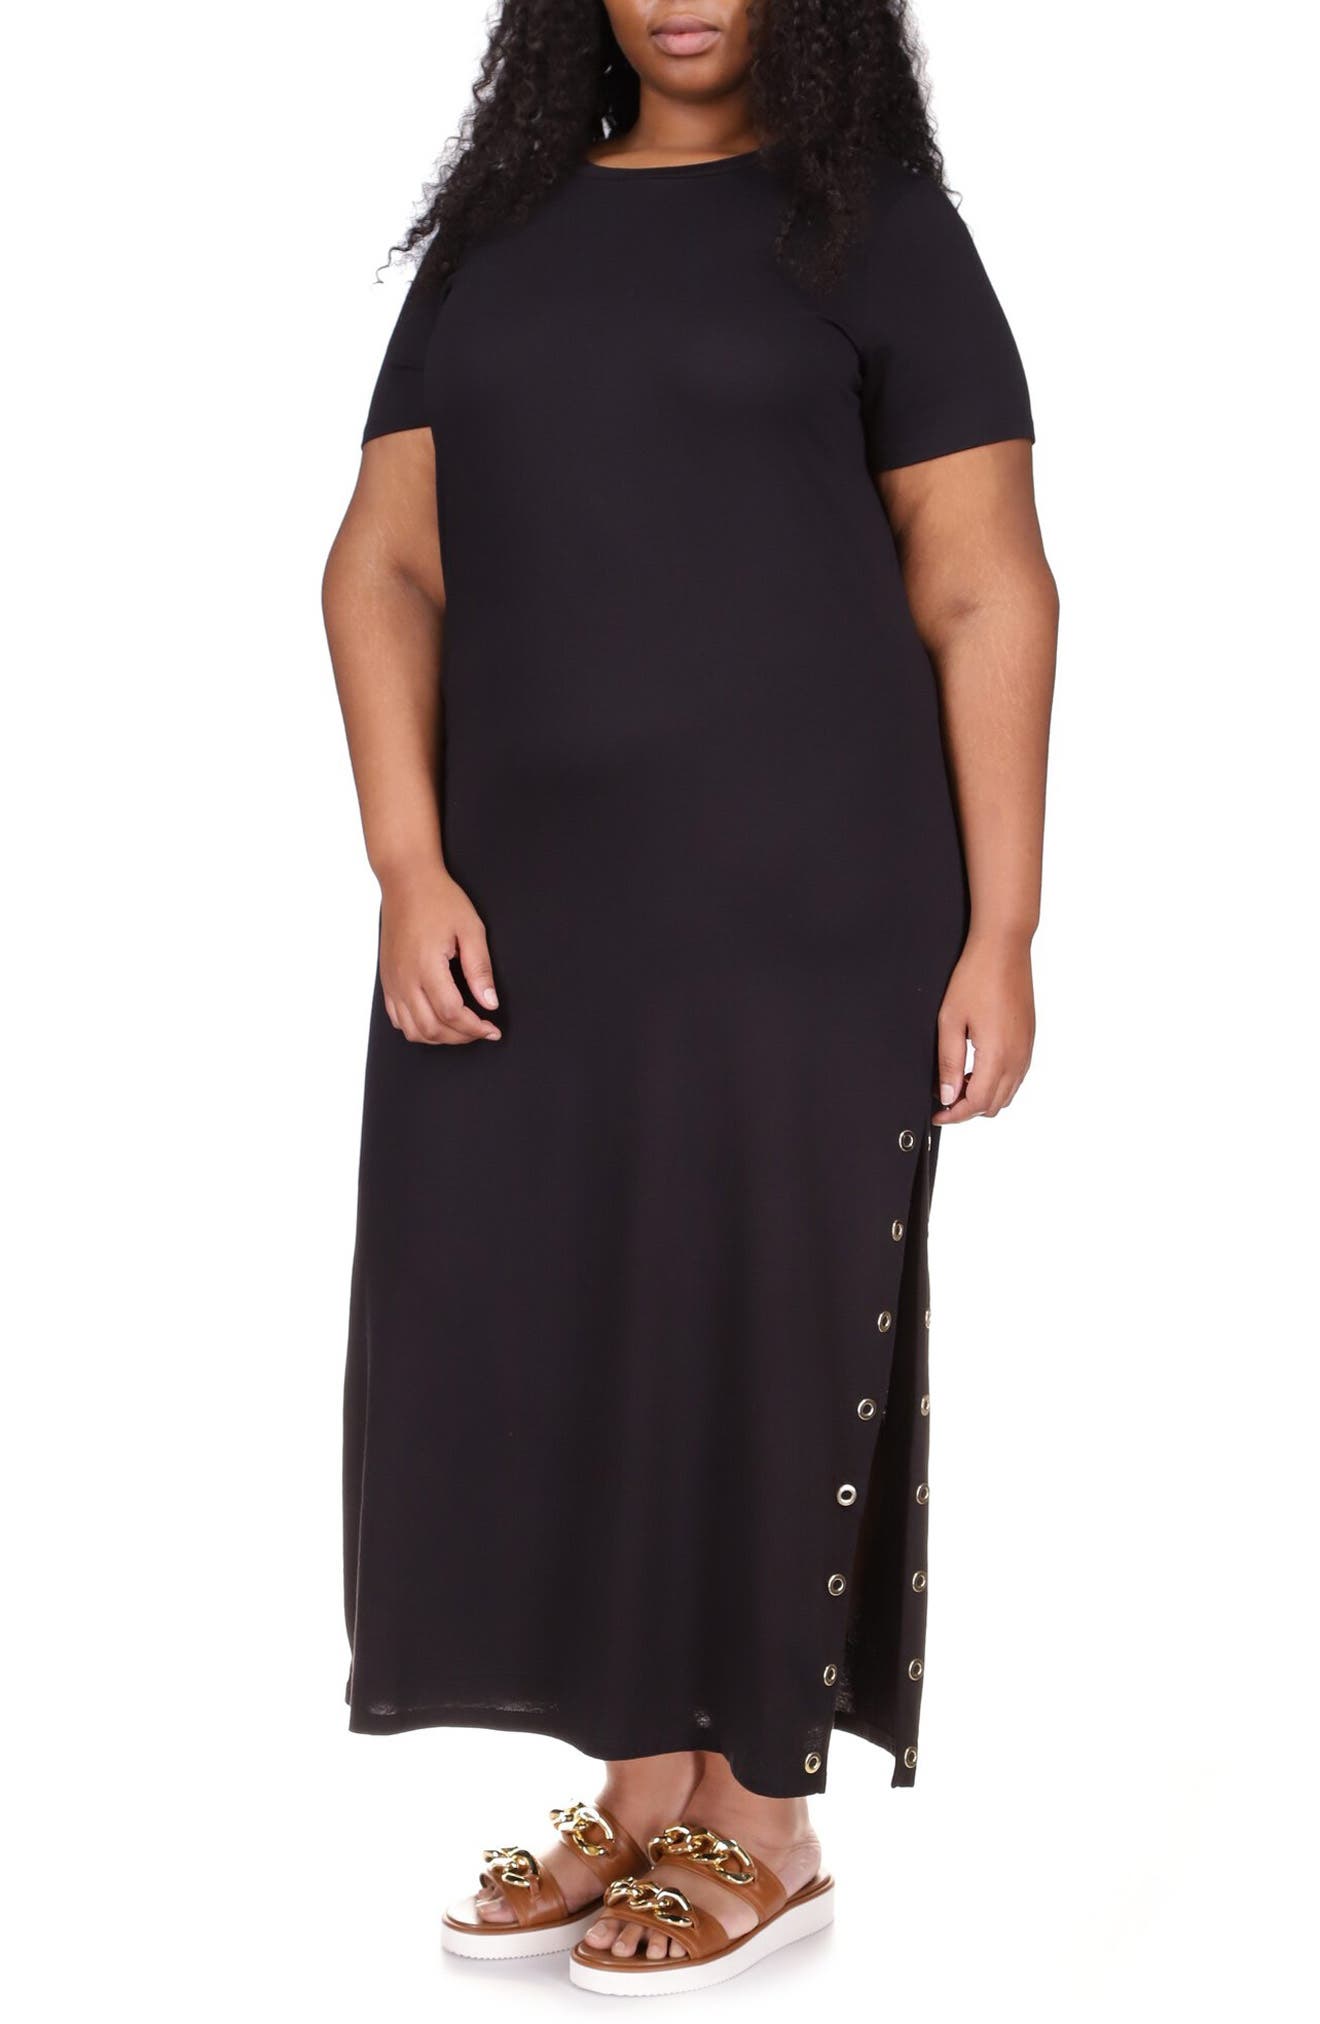 Michael Kors Casual Dresses for Women | Nordstrom